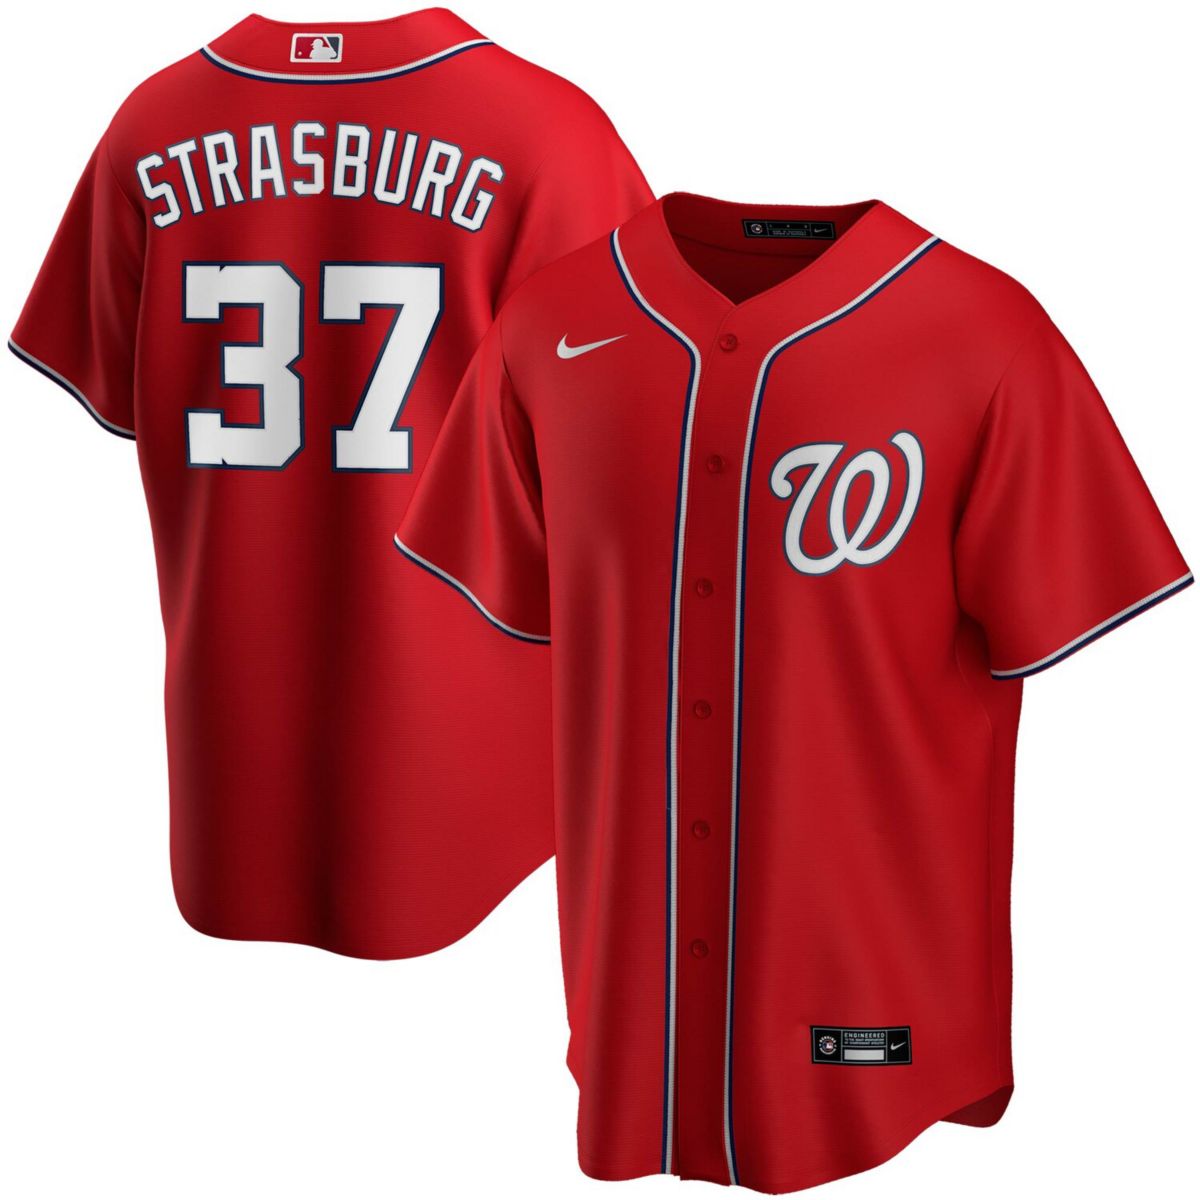 Мужская футболка Nike Stephen Strasburg Red Washington Nationals с альтернативной репликой имени игрока Nike